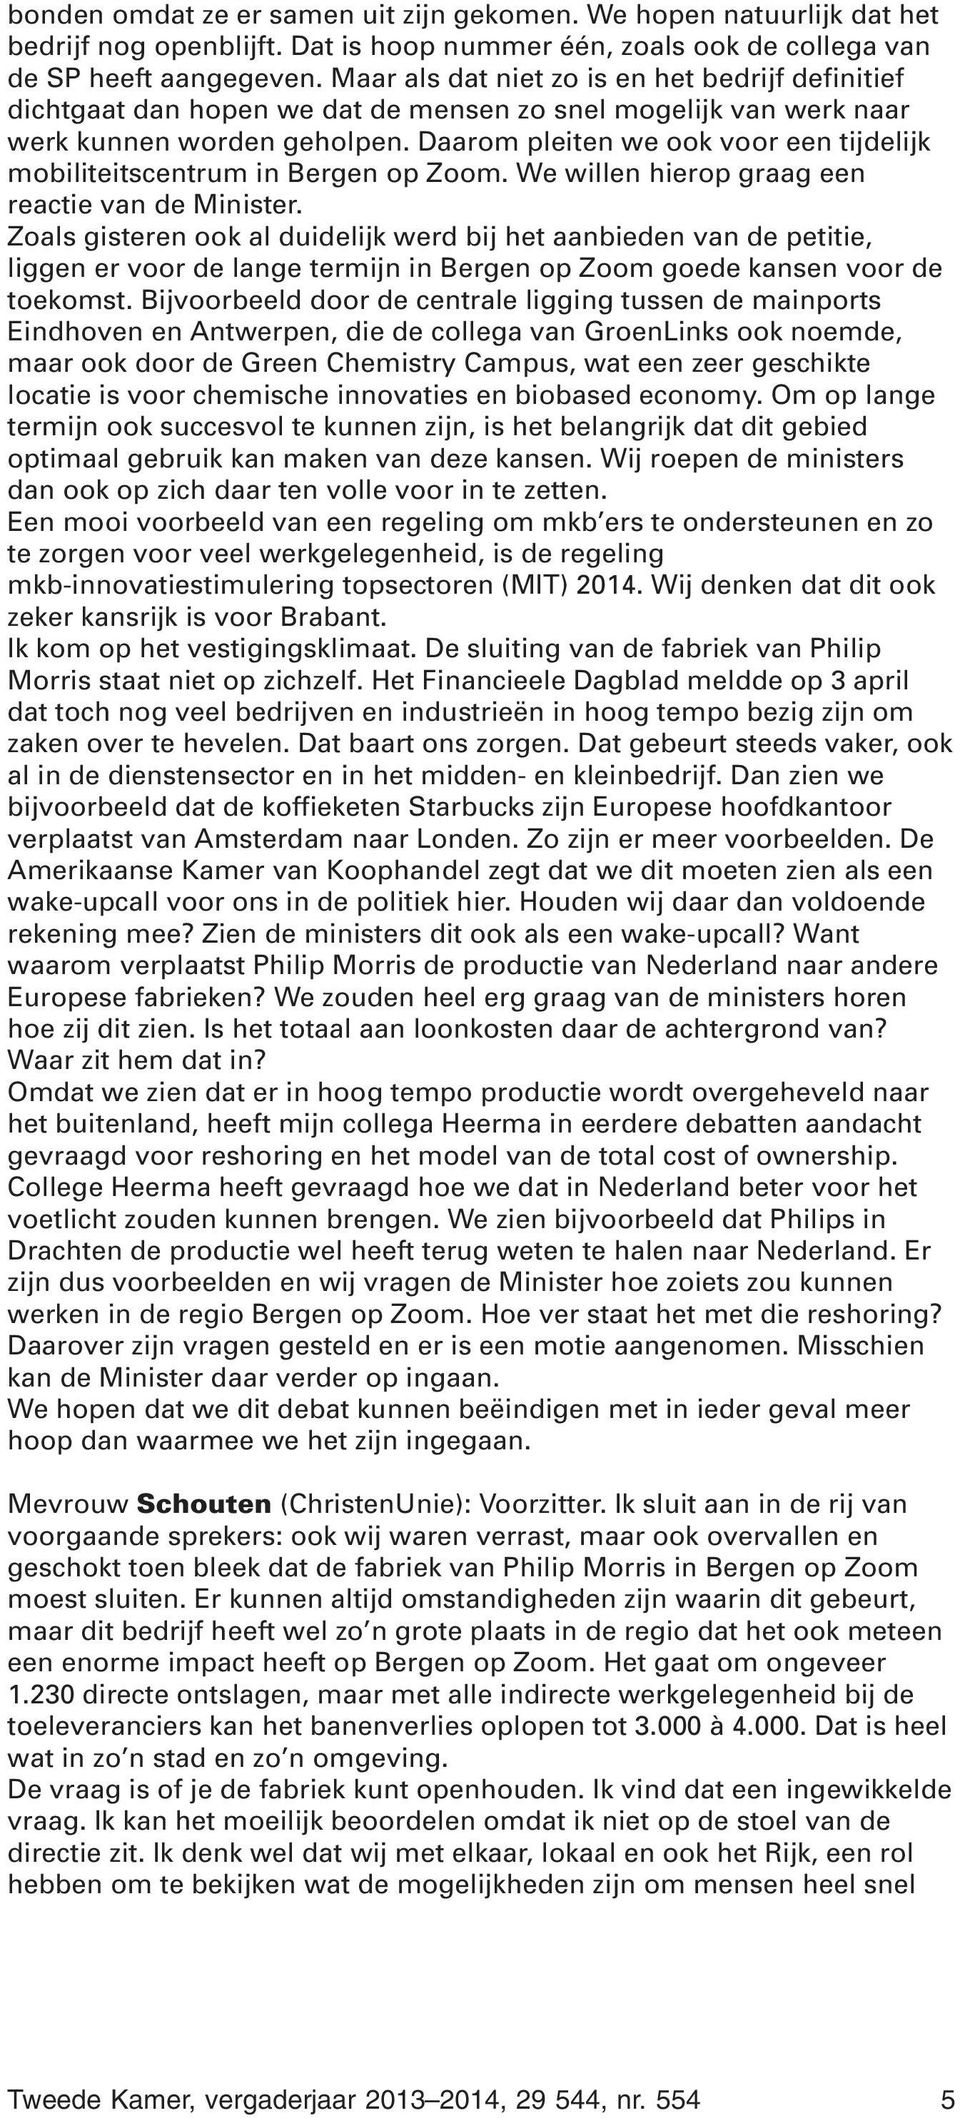 Daarom pleiten we ook voor een tijdelijk mobiliteitscentrum in Bergen op Zoom. We willen hierop graag een reactie van de Minister.